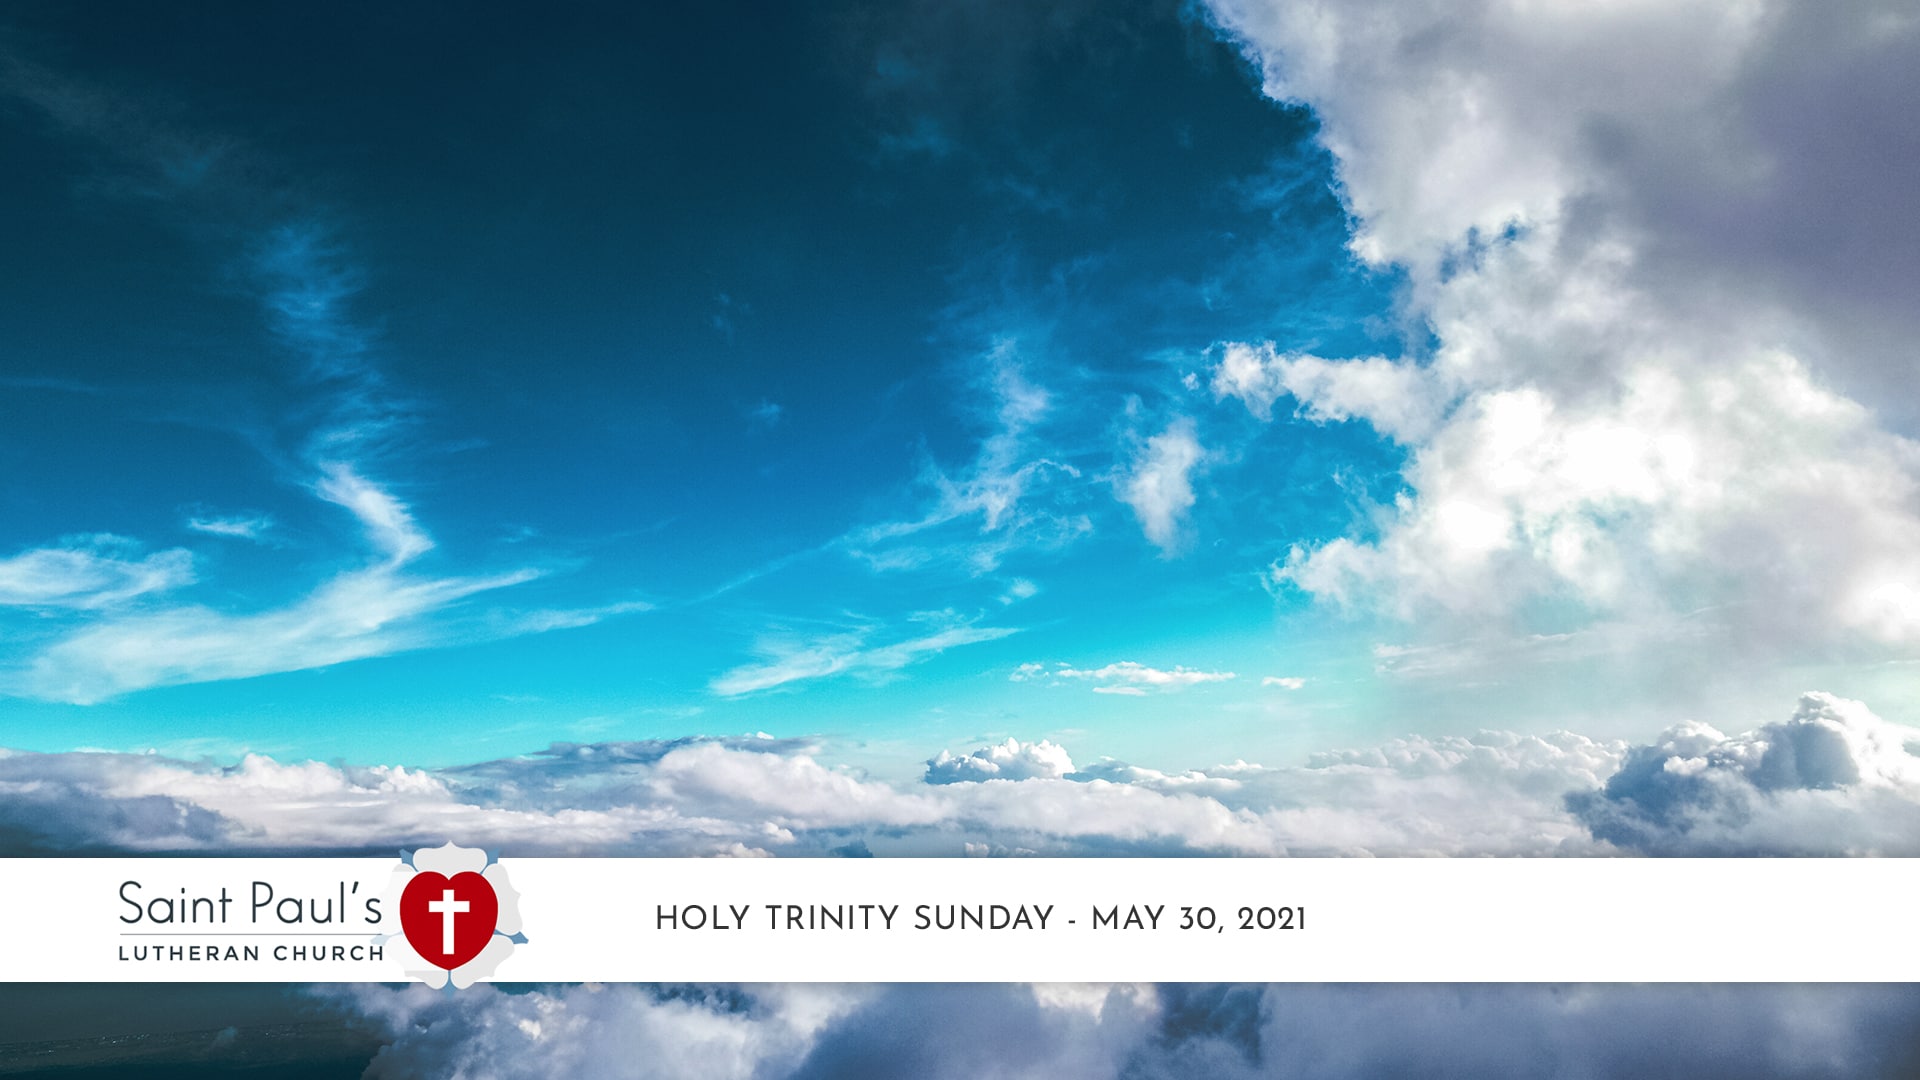 Holy Trinity Sunday – May 30, 2021